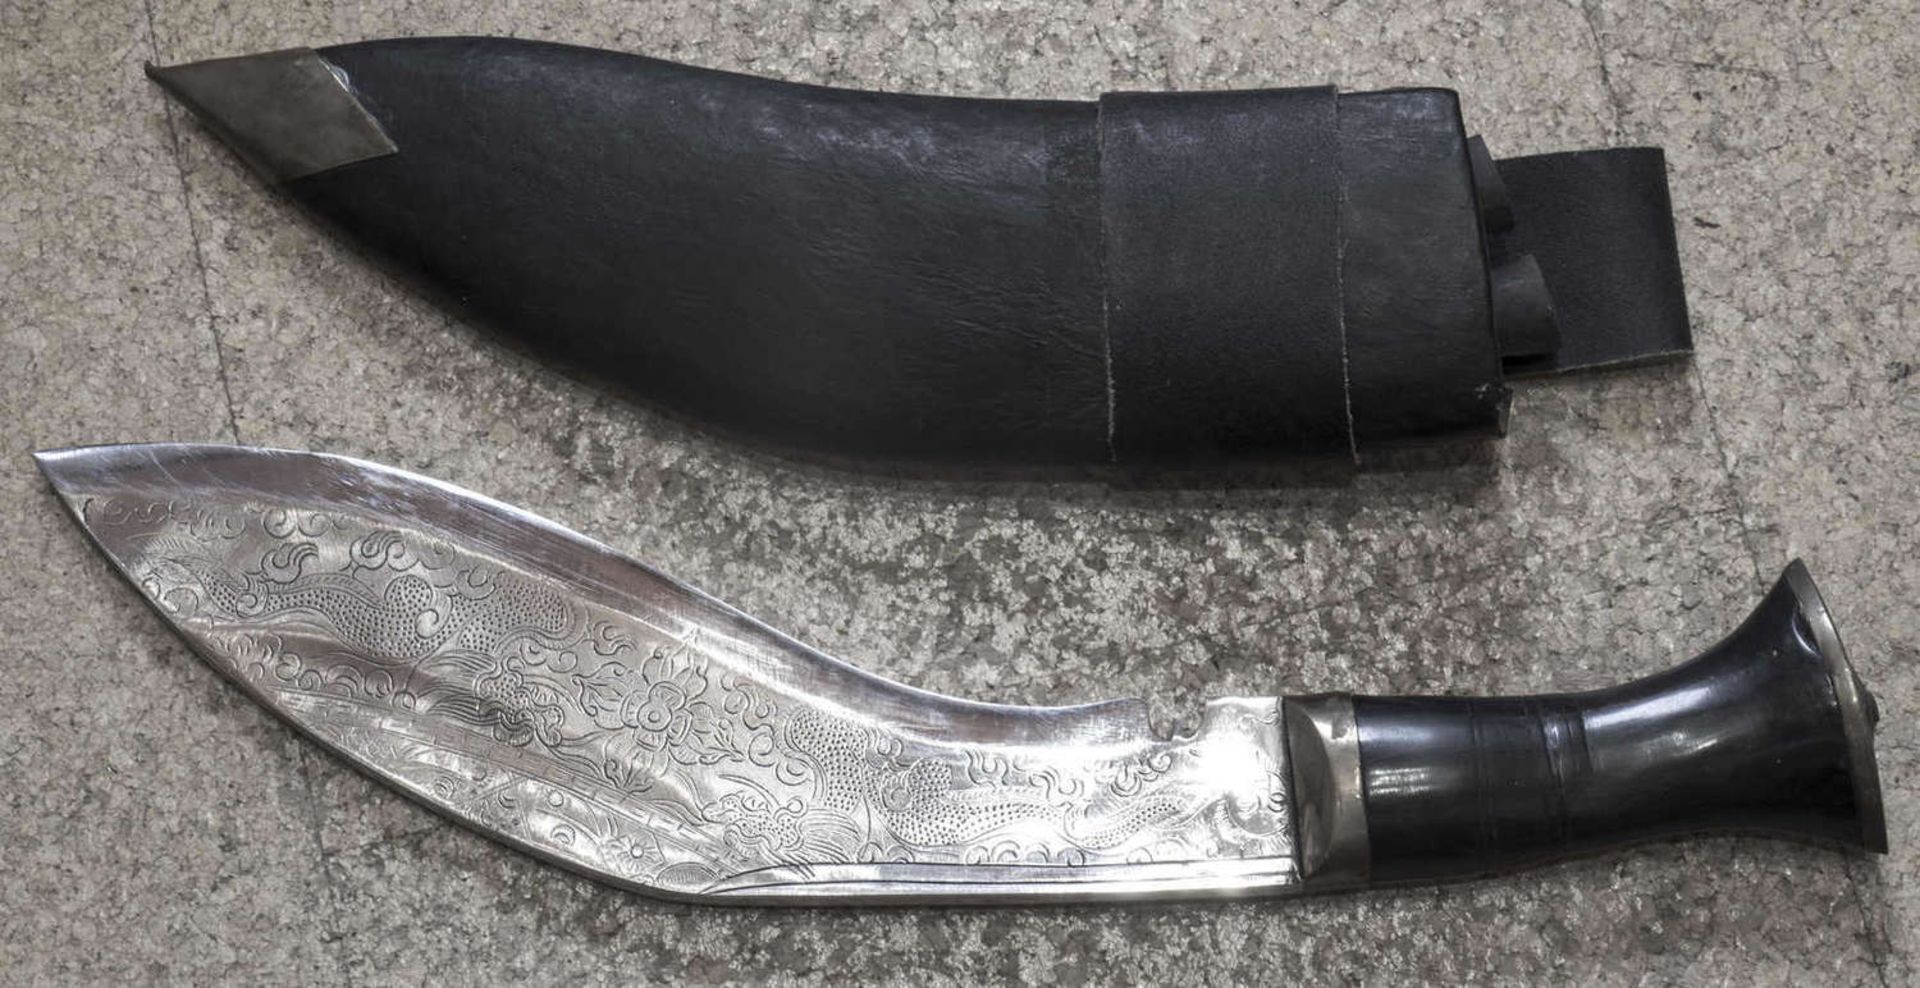 Indischer Krummdolch, Klinge fein ziseliert, Kolzscheide mit Lederüberzug mit zwei kleinen Messern